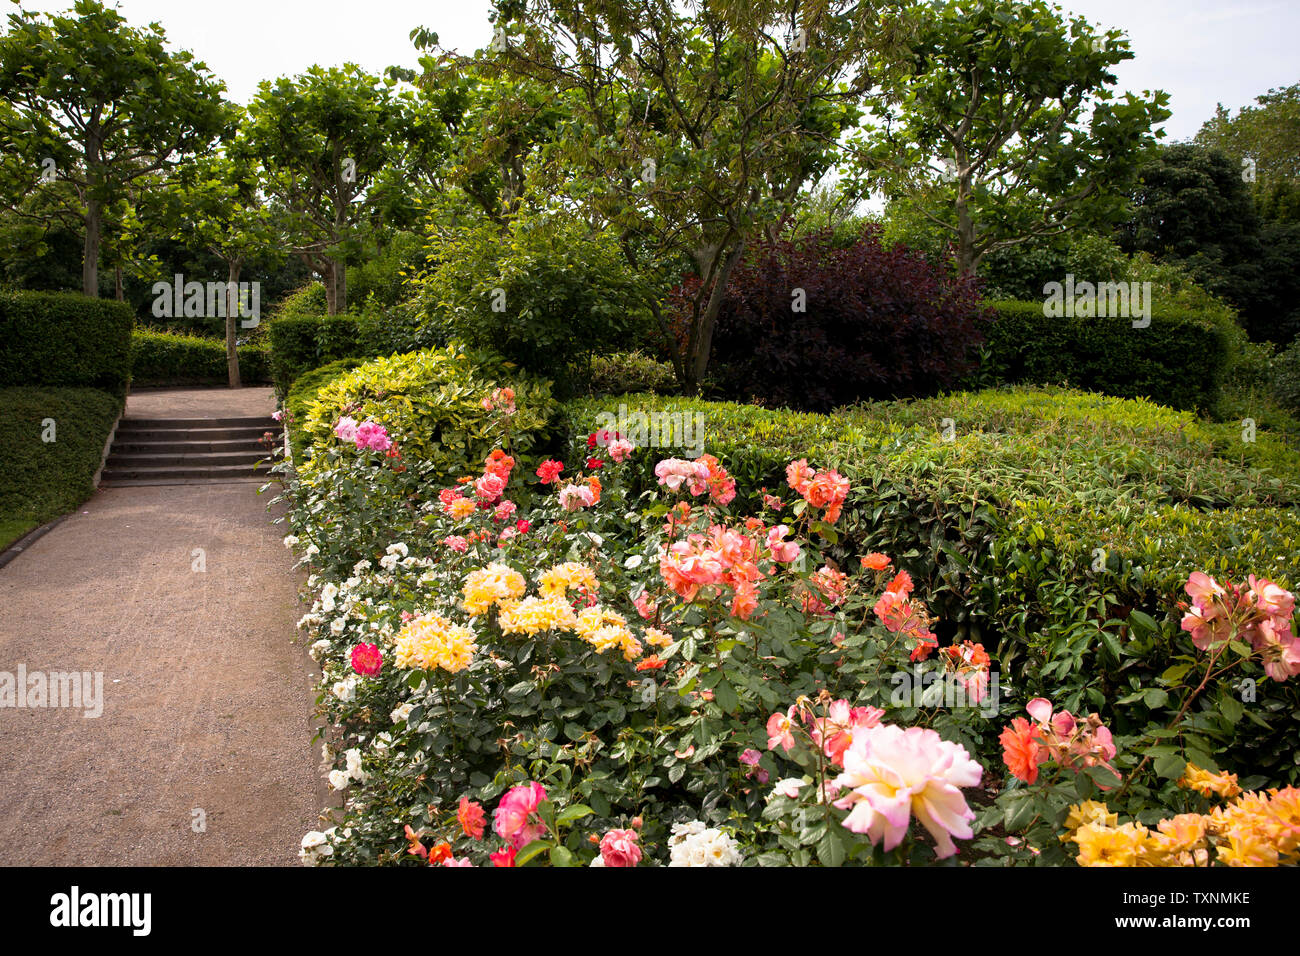 Le jardin de roses à Fort X, une partie de l'ancien anneau forteresse intérieure, Cologne, Allemagne. der Rosengarten am Fort X, einem Teil des ehemaligen inneren Banque D'Images